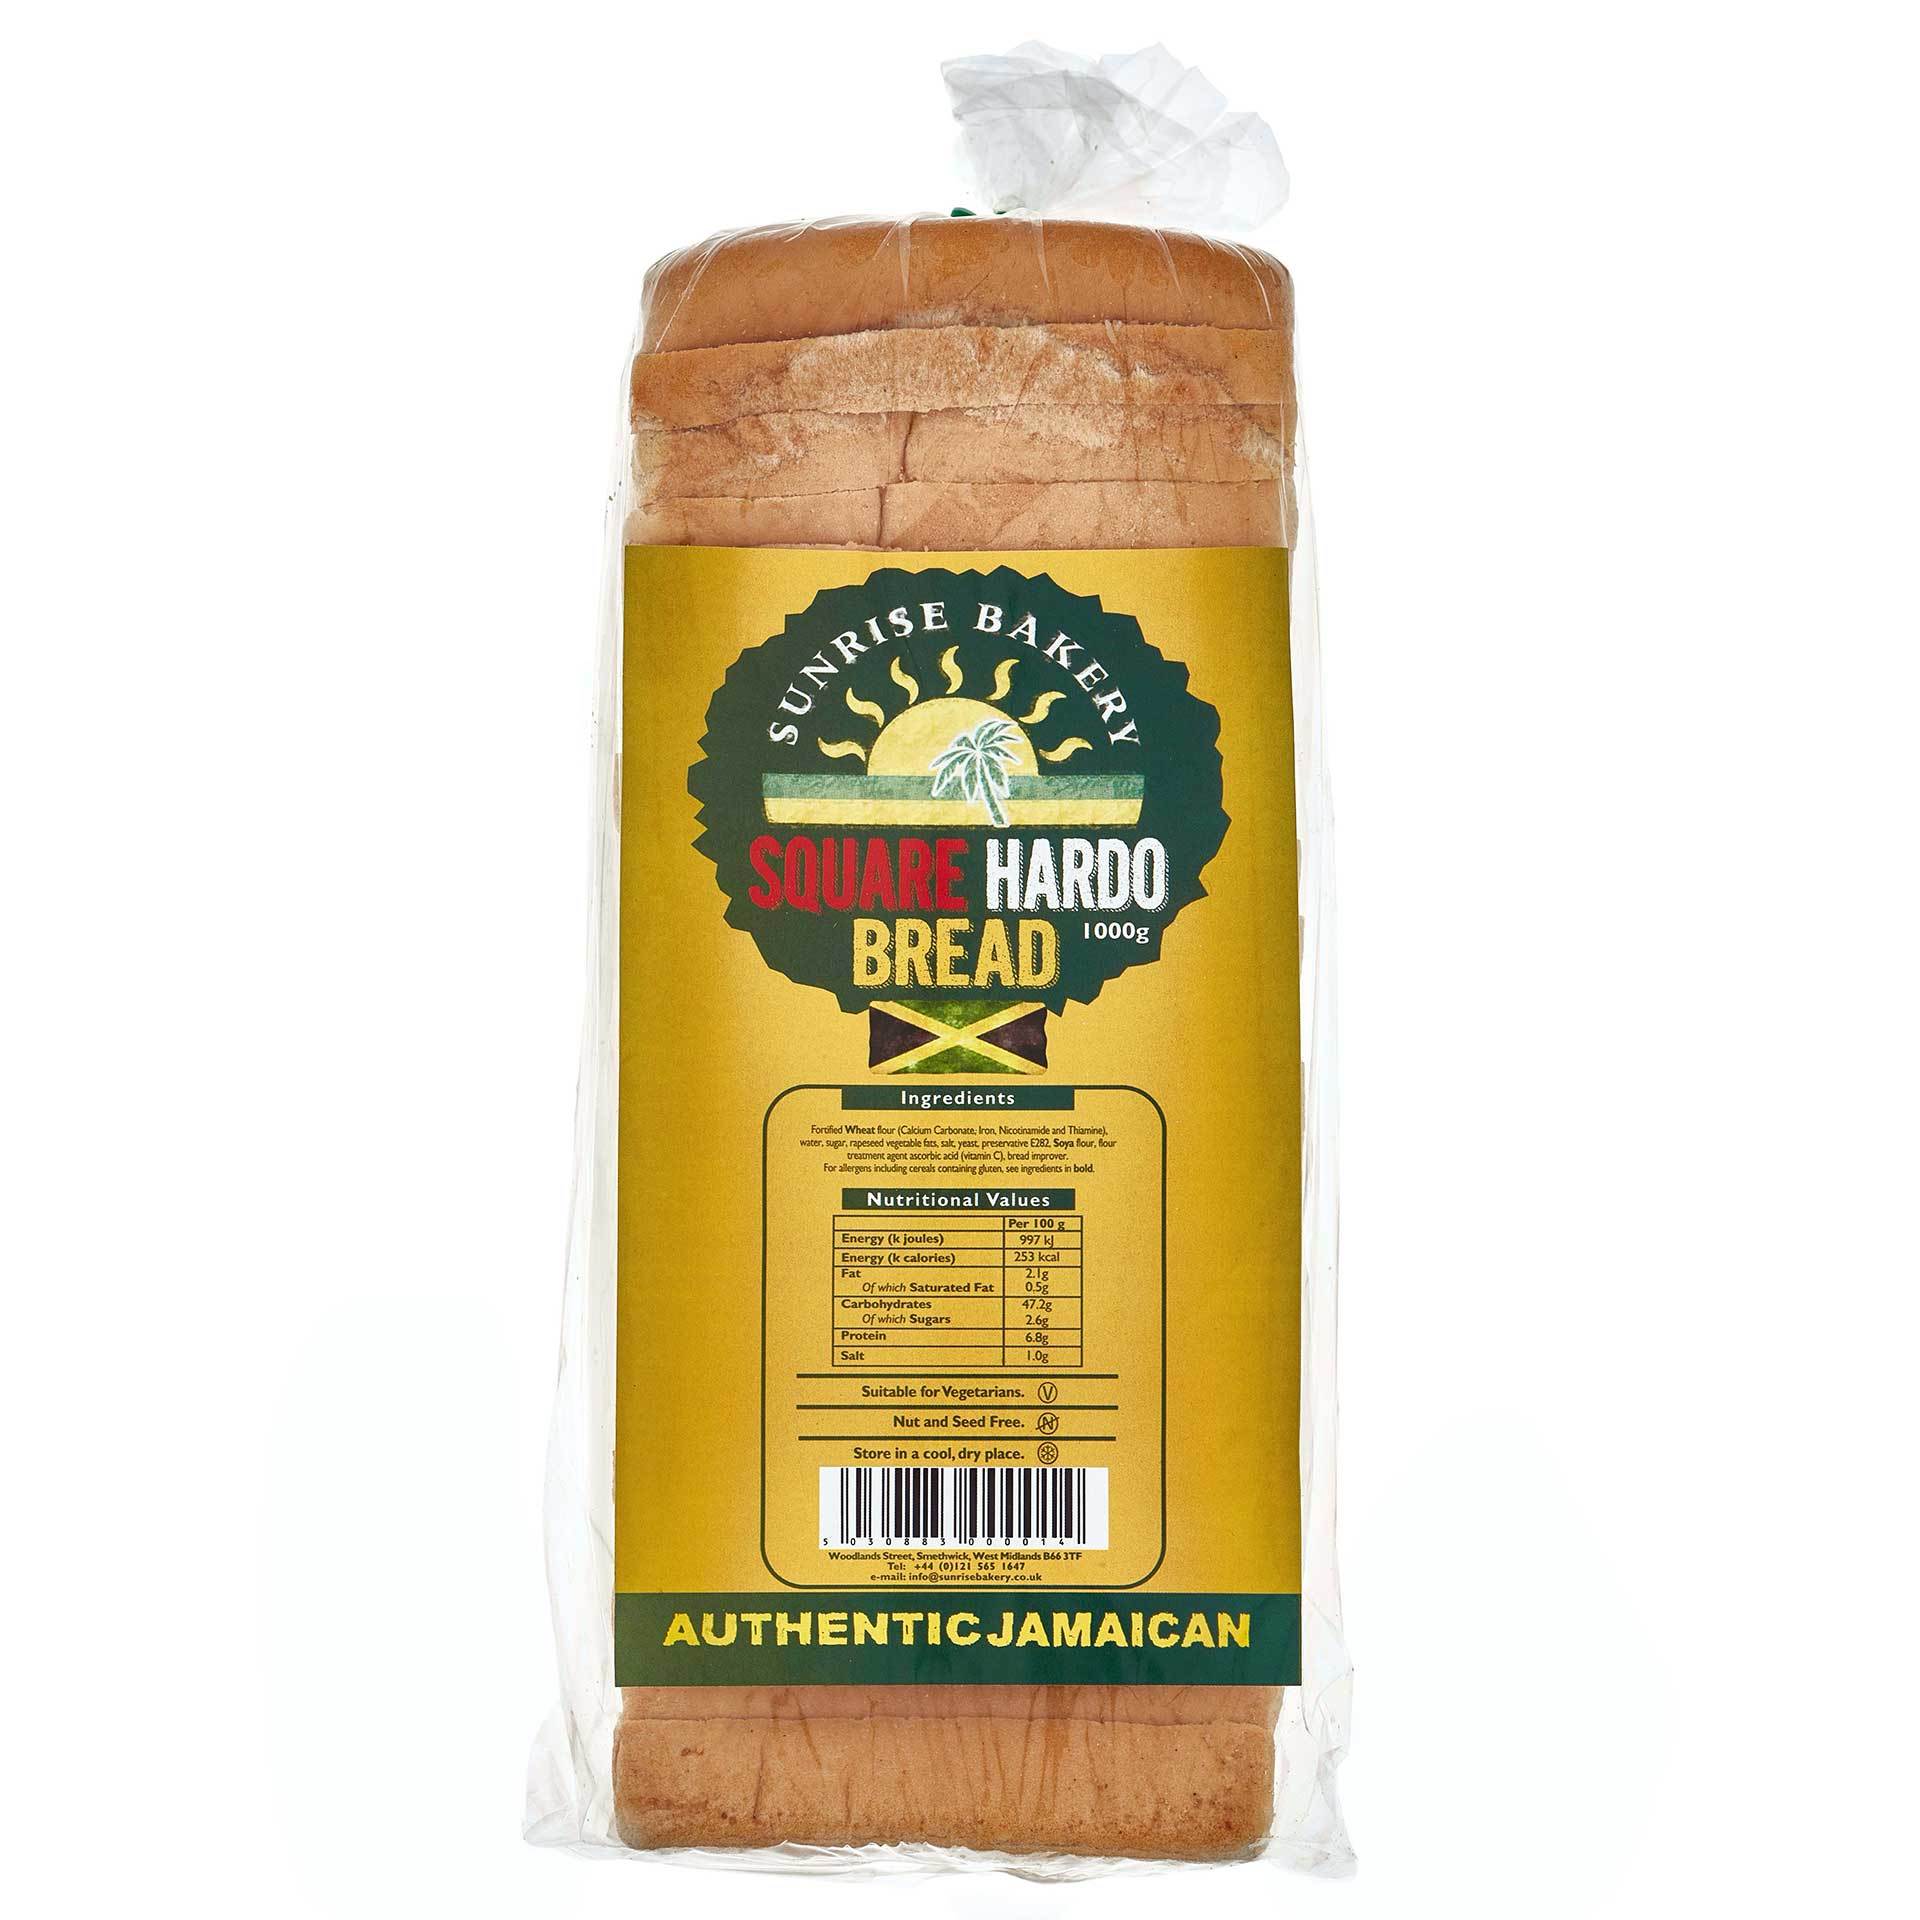 Square Hardo bread